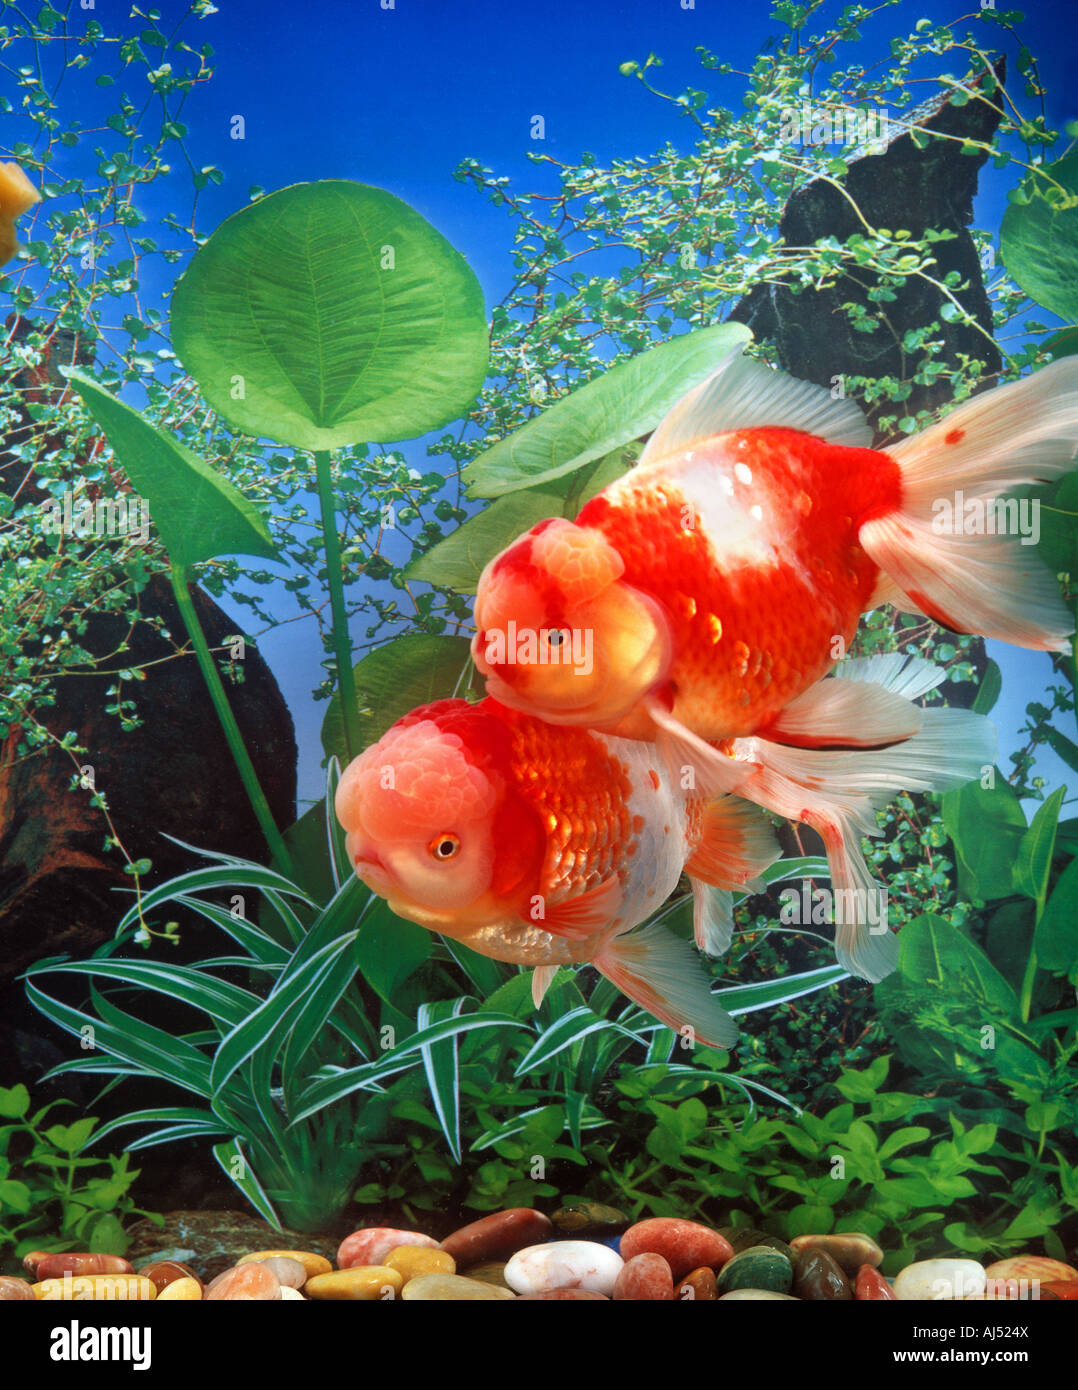 A pair of goldfish in a aquarium Stock Photo